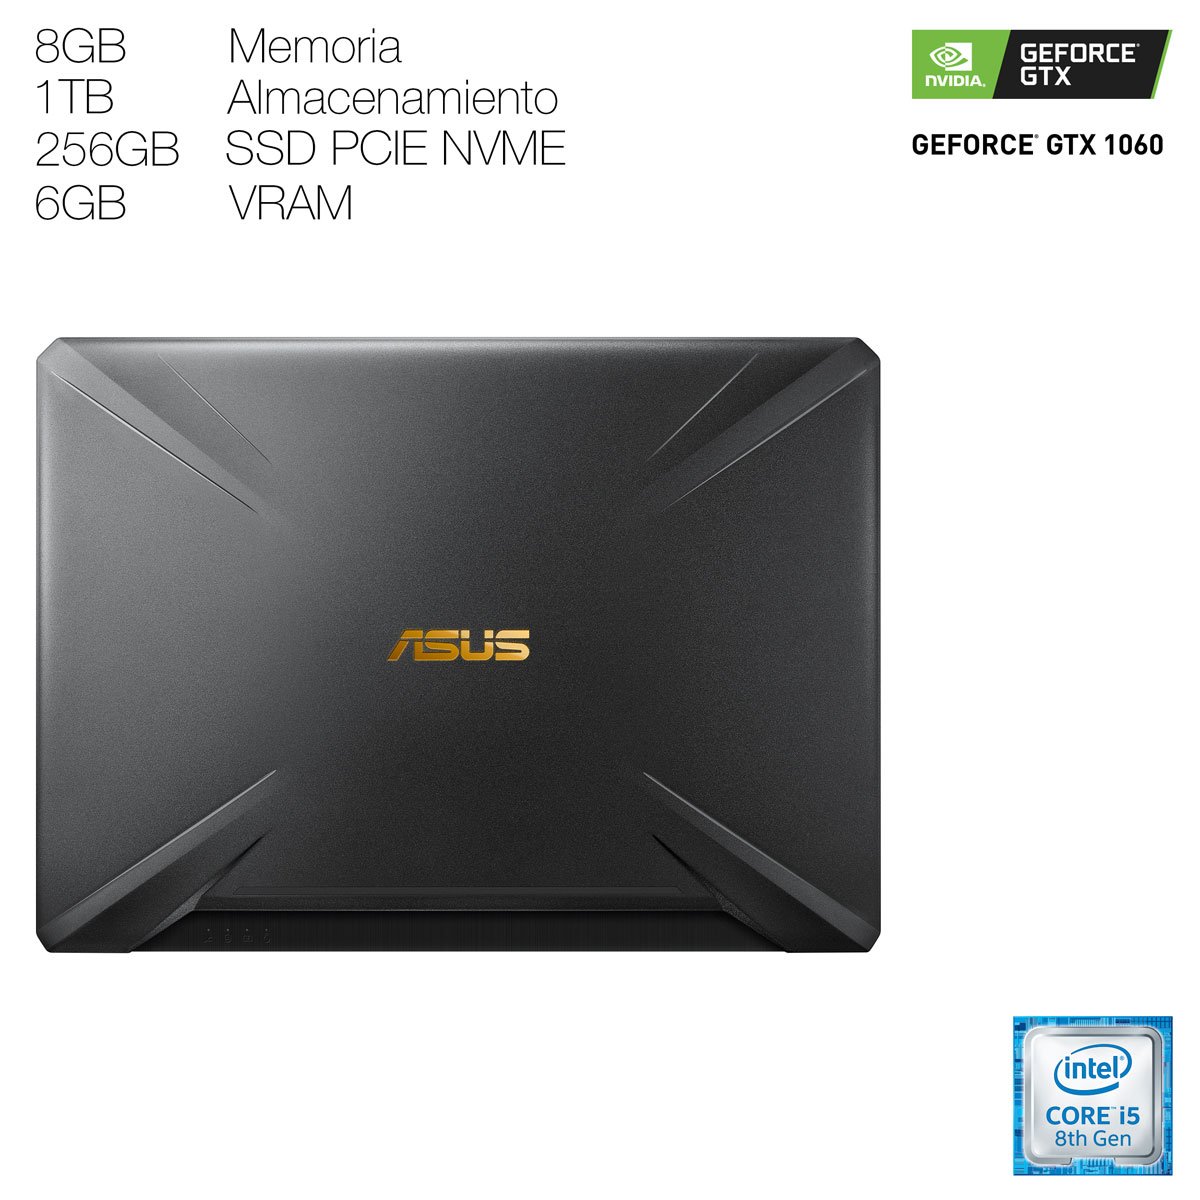 Laptop Gamer Asus Tuf Fx505Gm-Bn061T